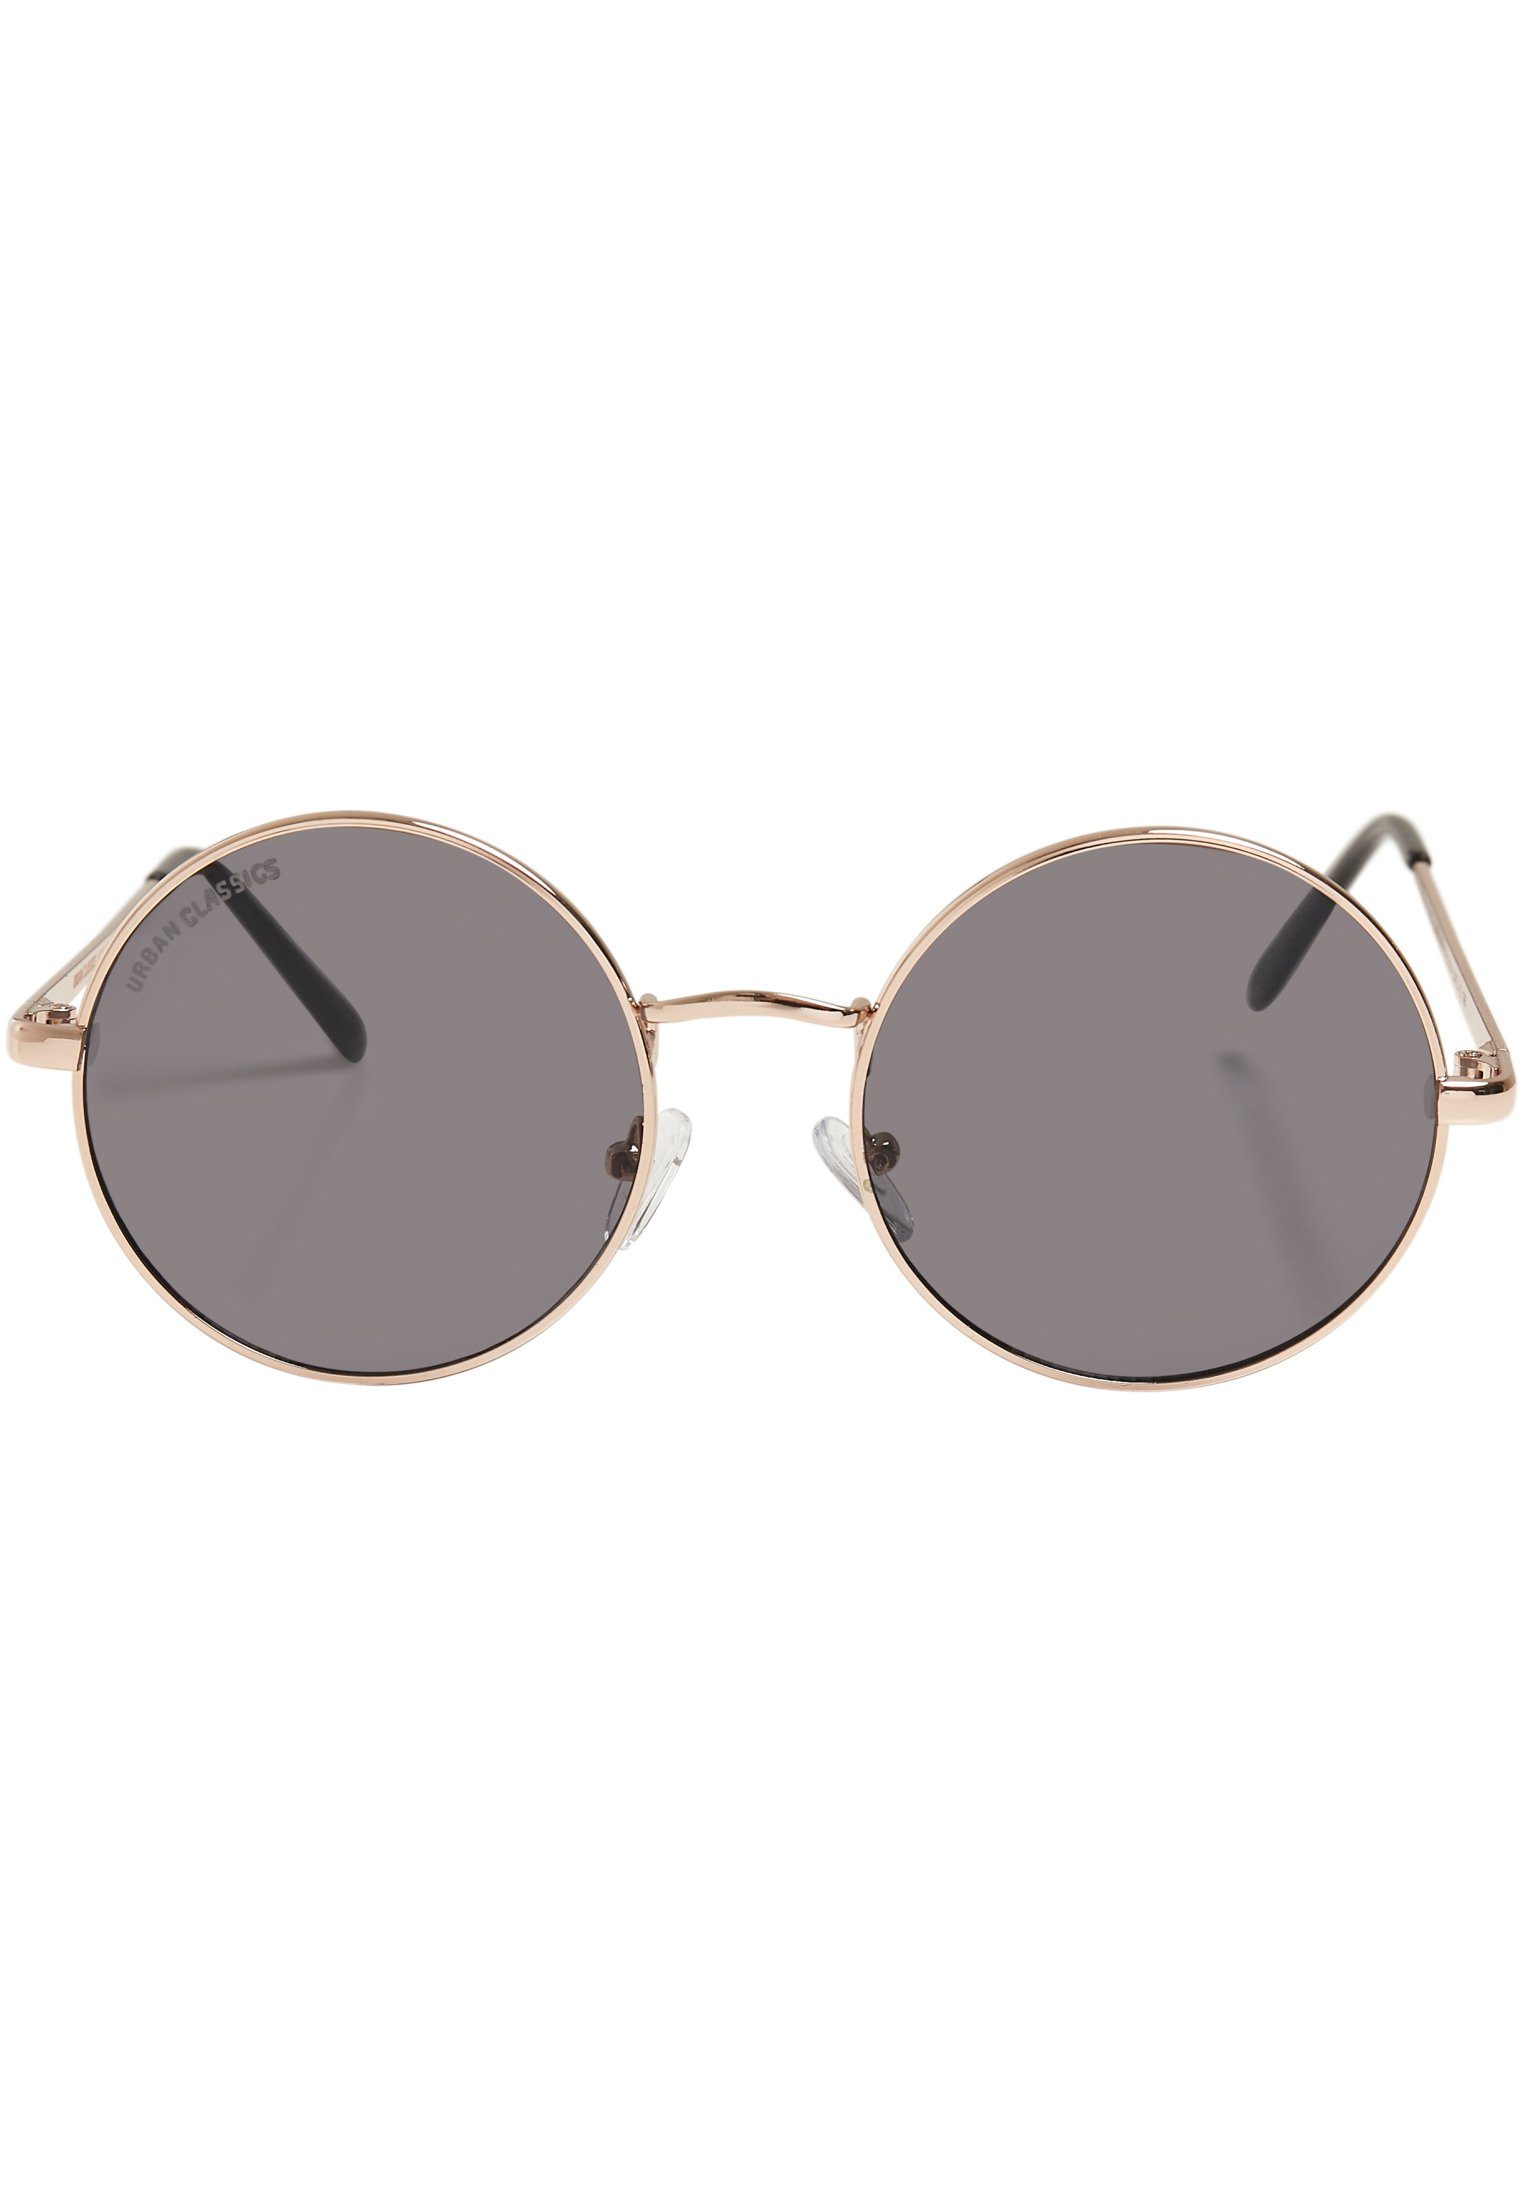 URBAN CLASSICS Sonnenbrille Accessoires UC gold/blk Sunglasses 107